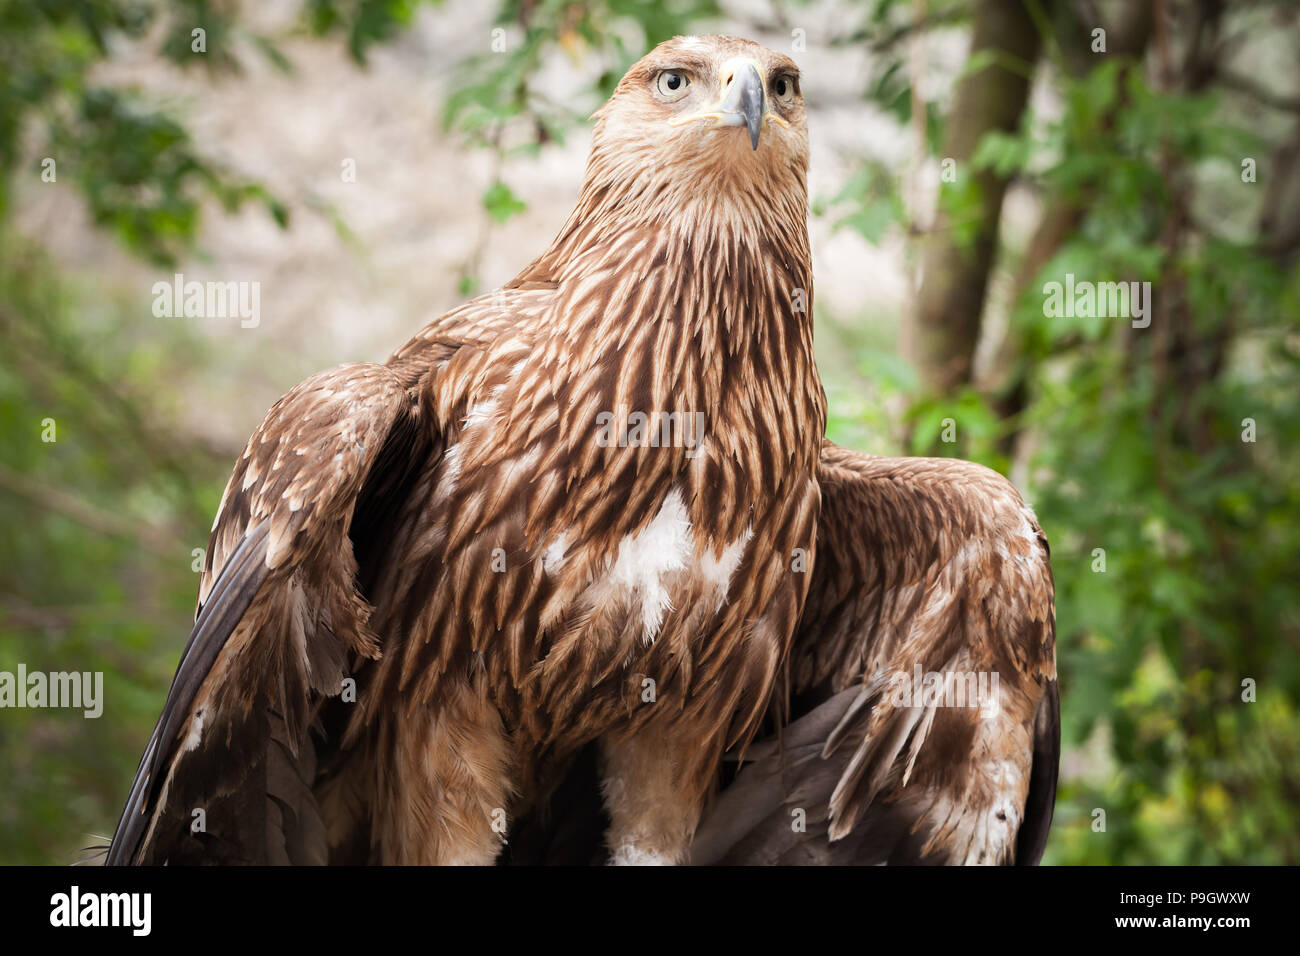 Aquila reale Aquila chrysaetos, close-up. Si tratta di uno dei più noti rapaci Foto Stock